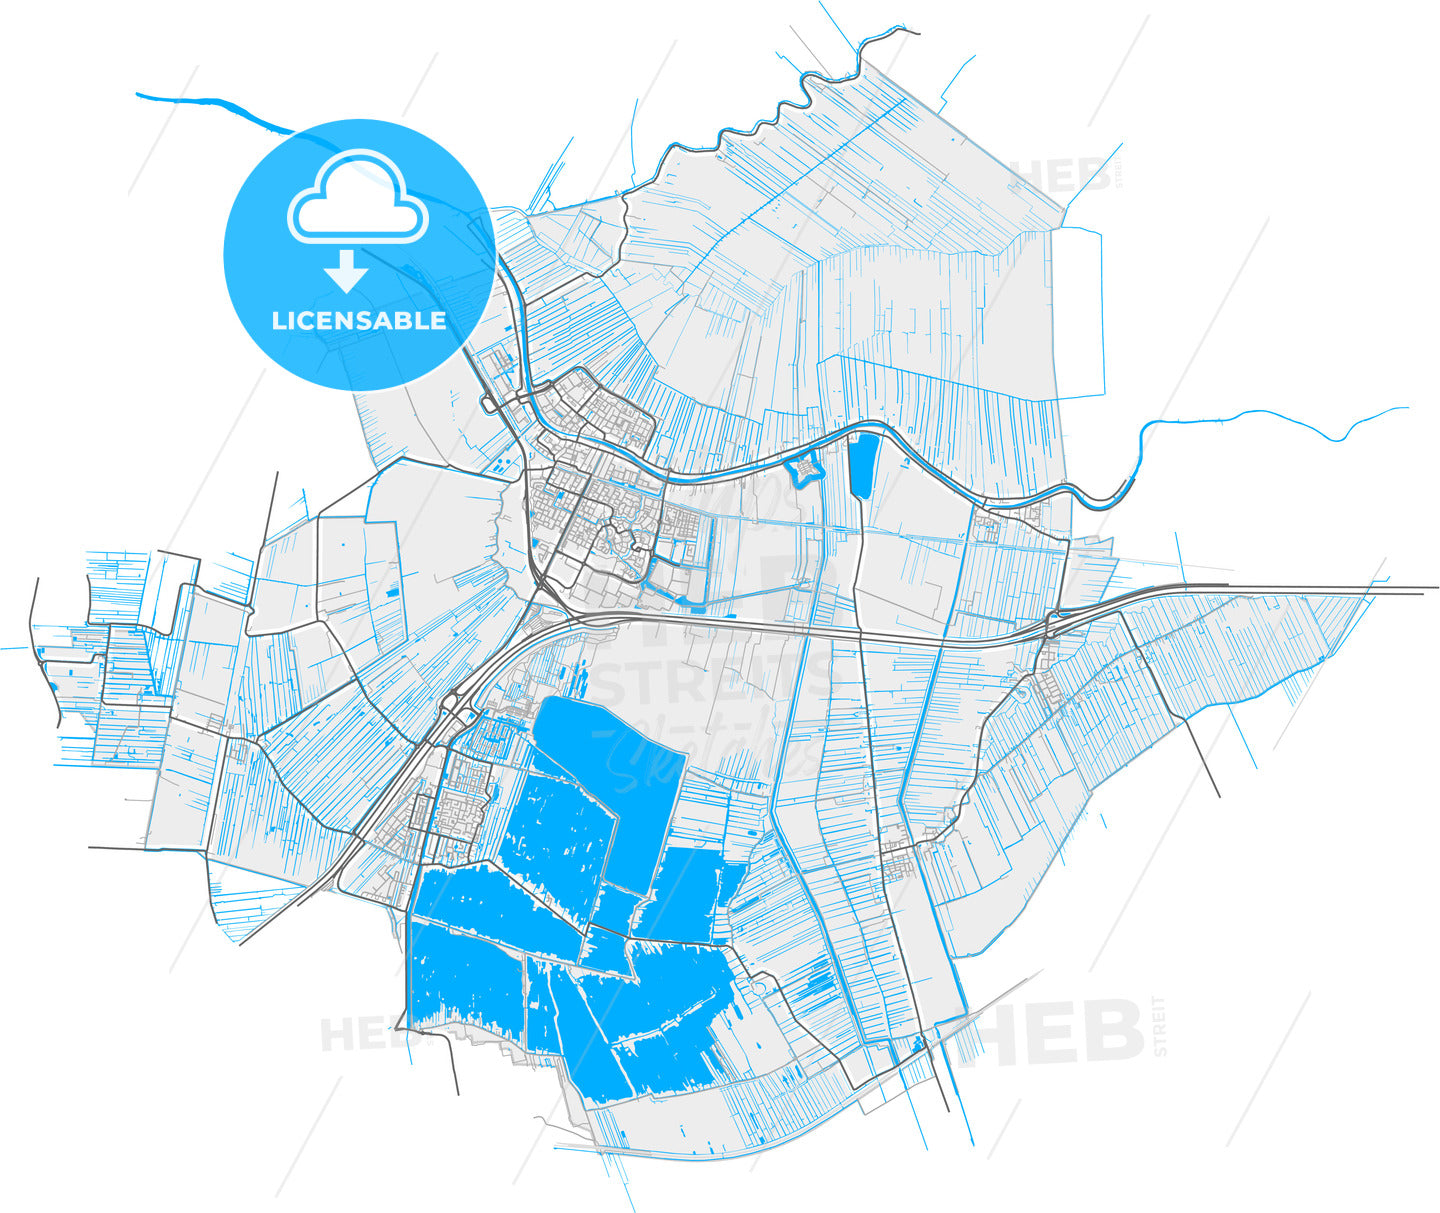 Bodegraven-Reeuwijk, South Holland, Netherlands, high quality vector map